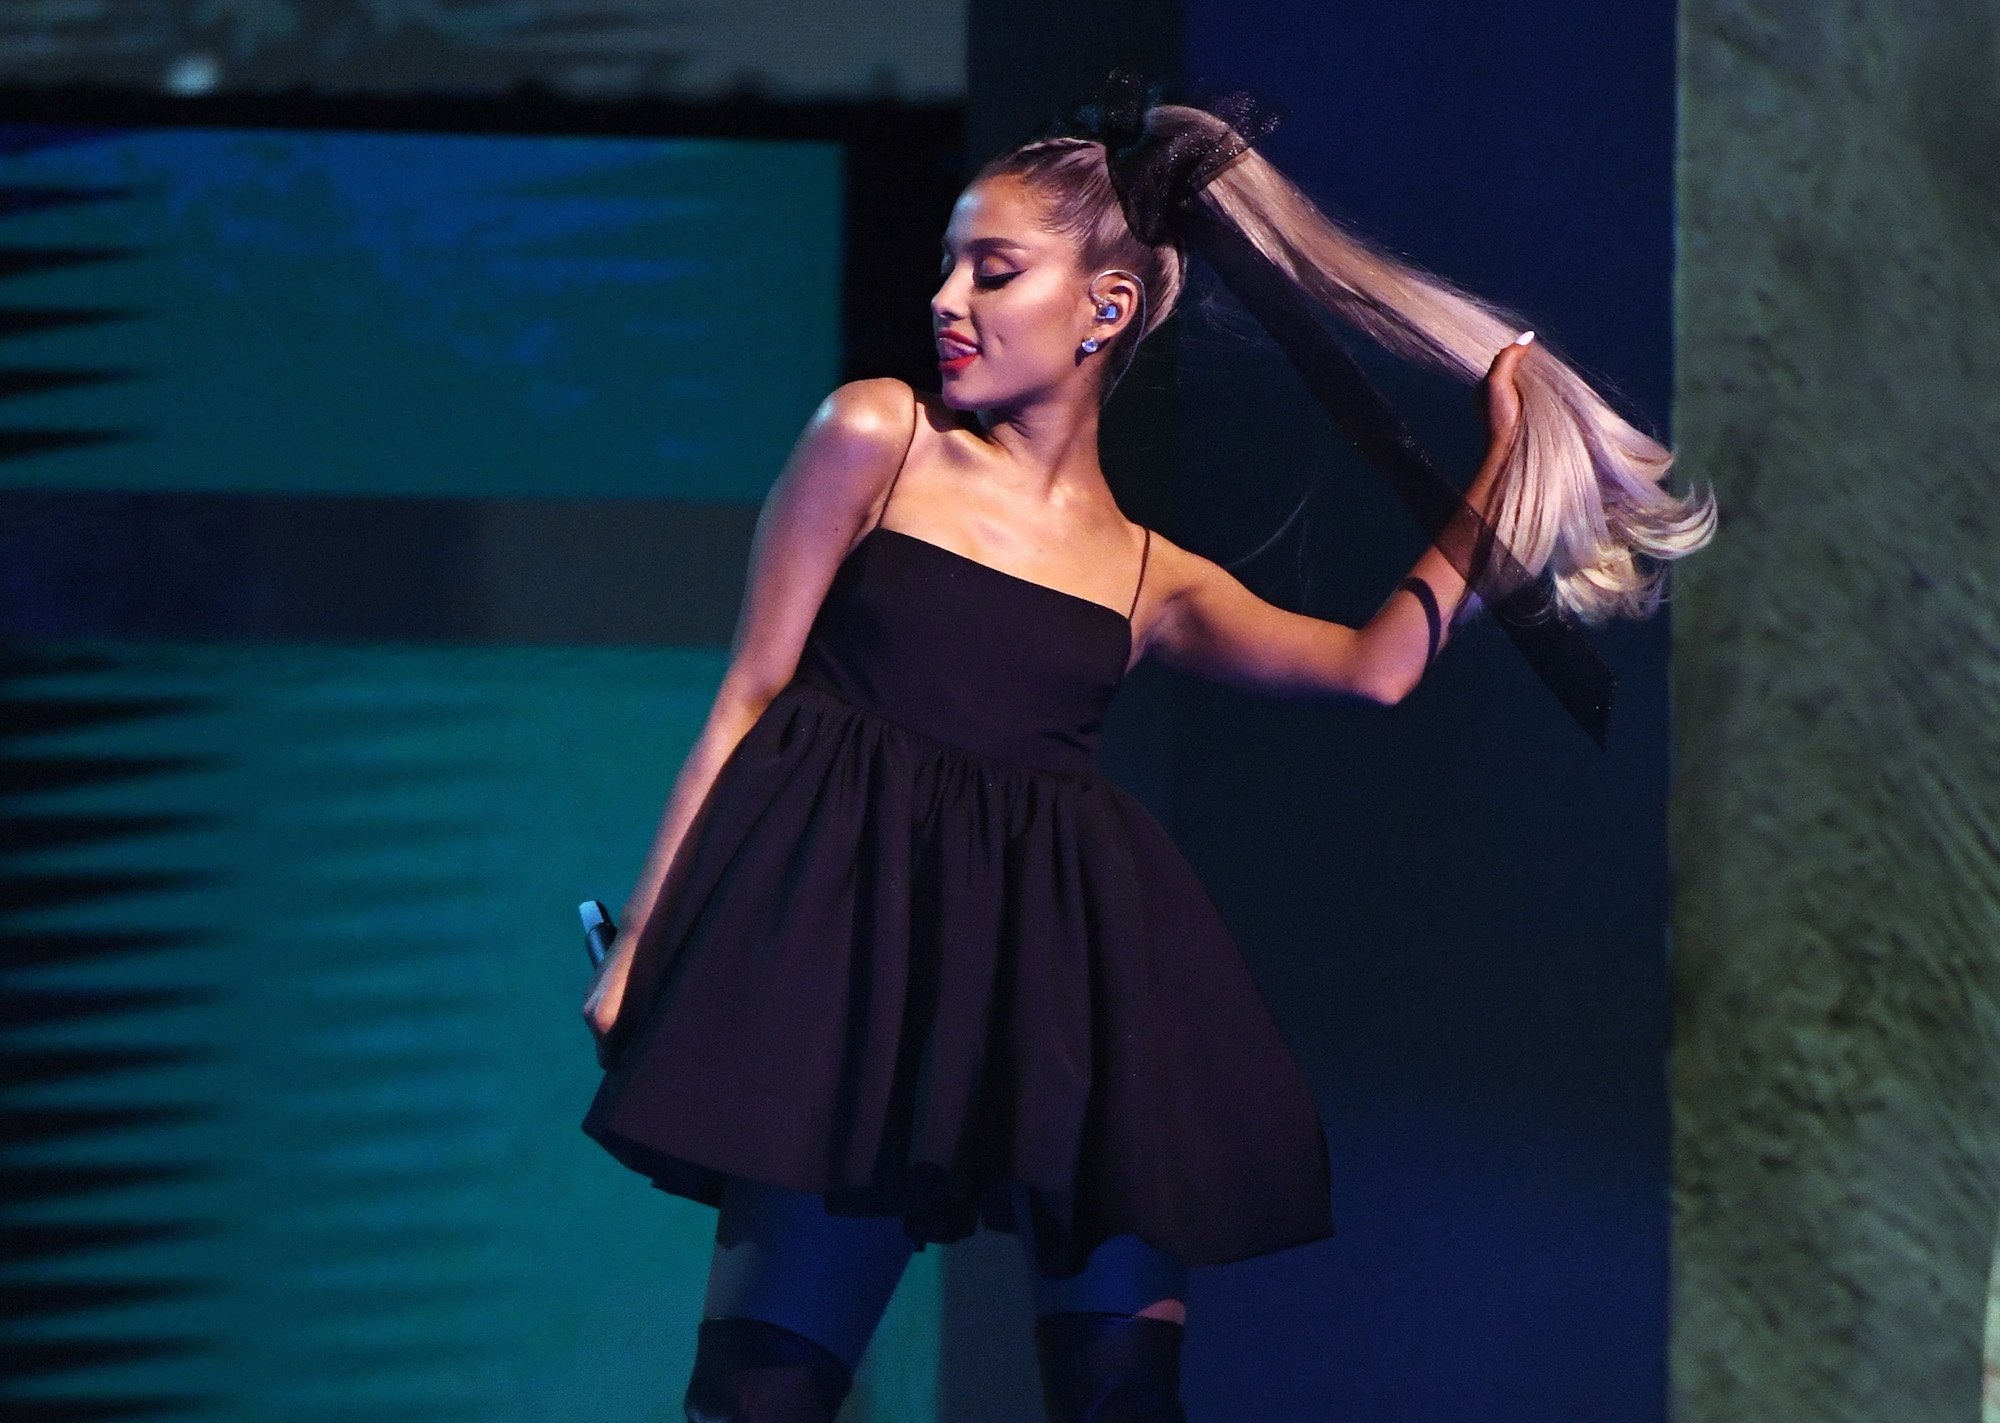 Ariana Grande performing